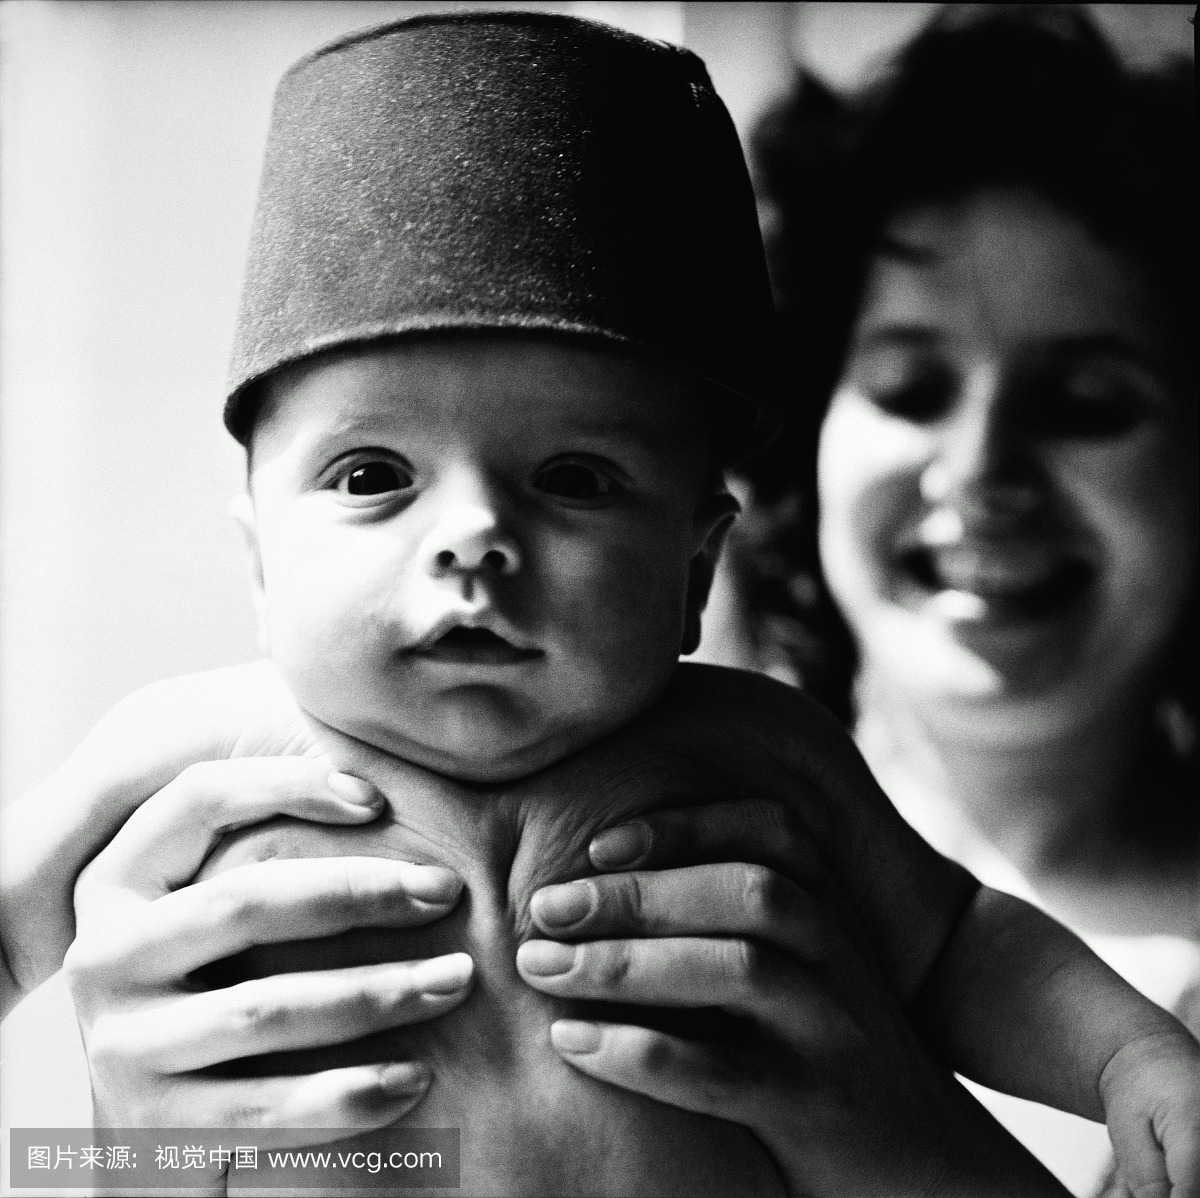 母亲抱着婴儿(3-6个月)戴帽子,特写镜头(黑白)